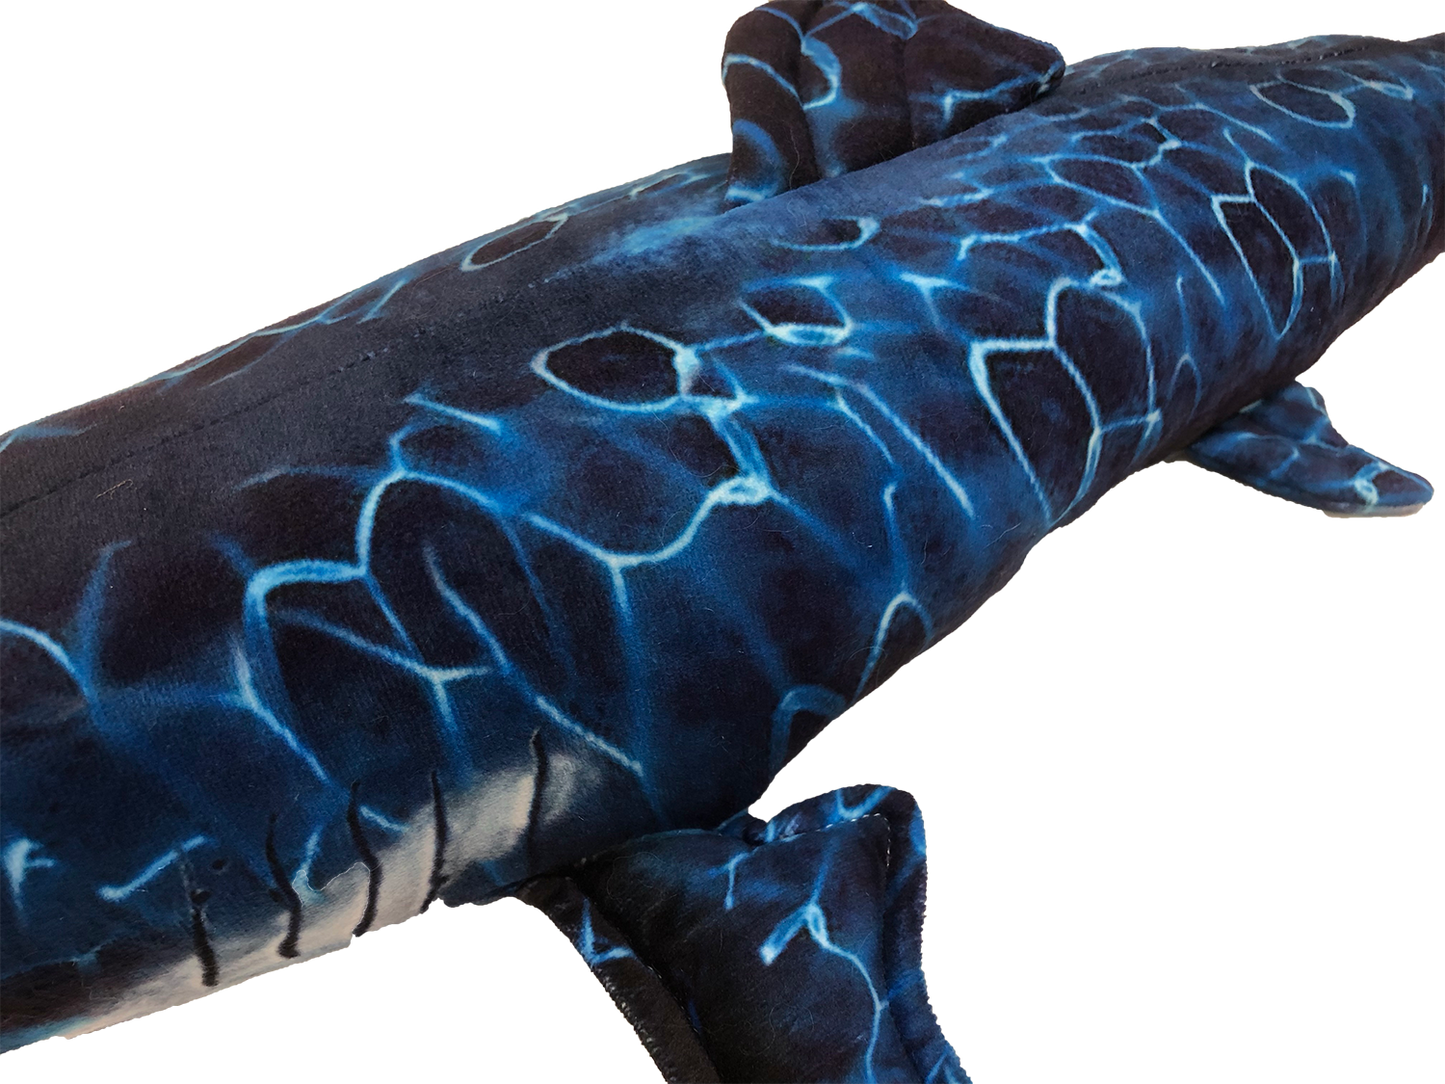 Blue Shark 29" Aquatic Plush Ocean Stuffed Animal